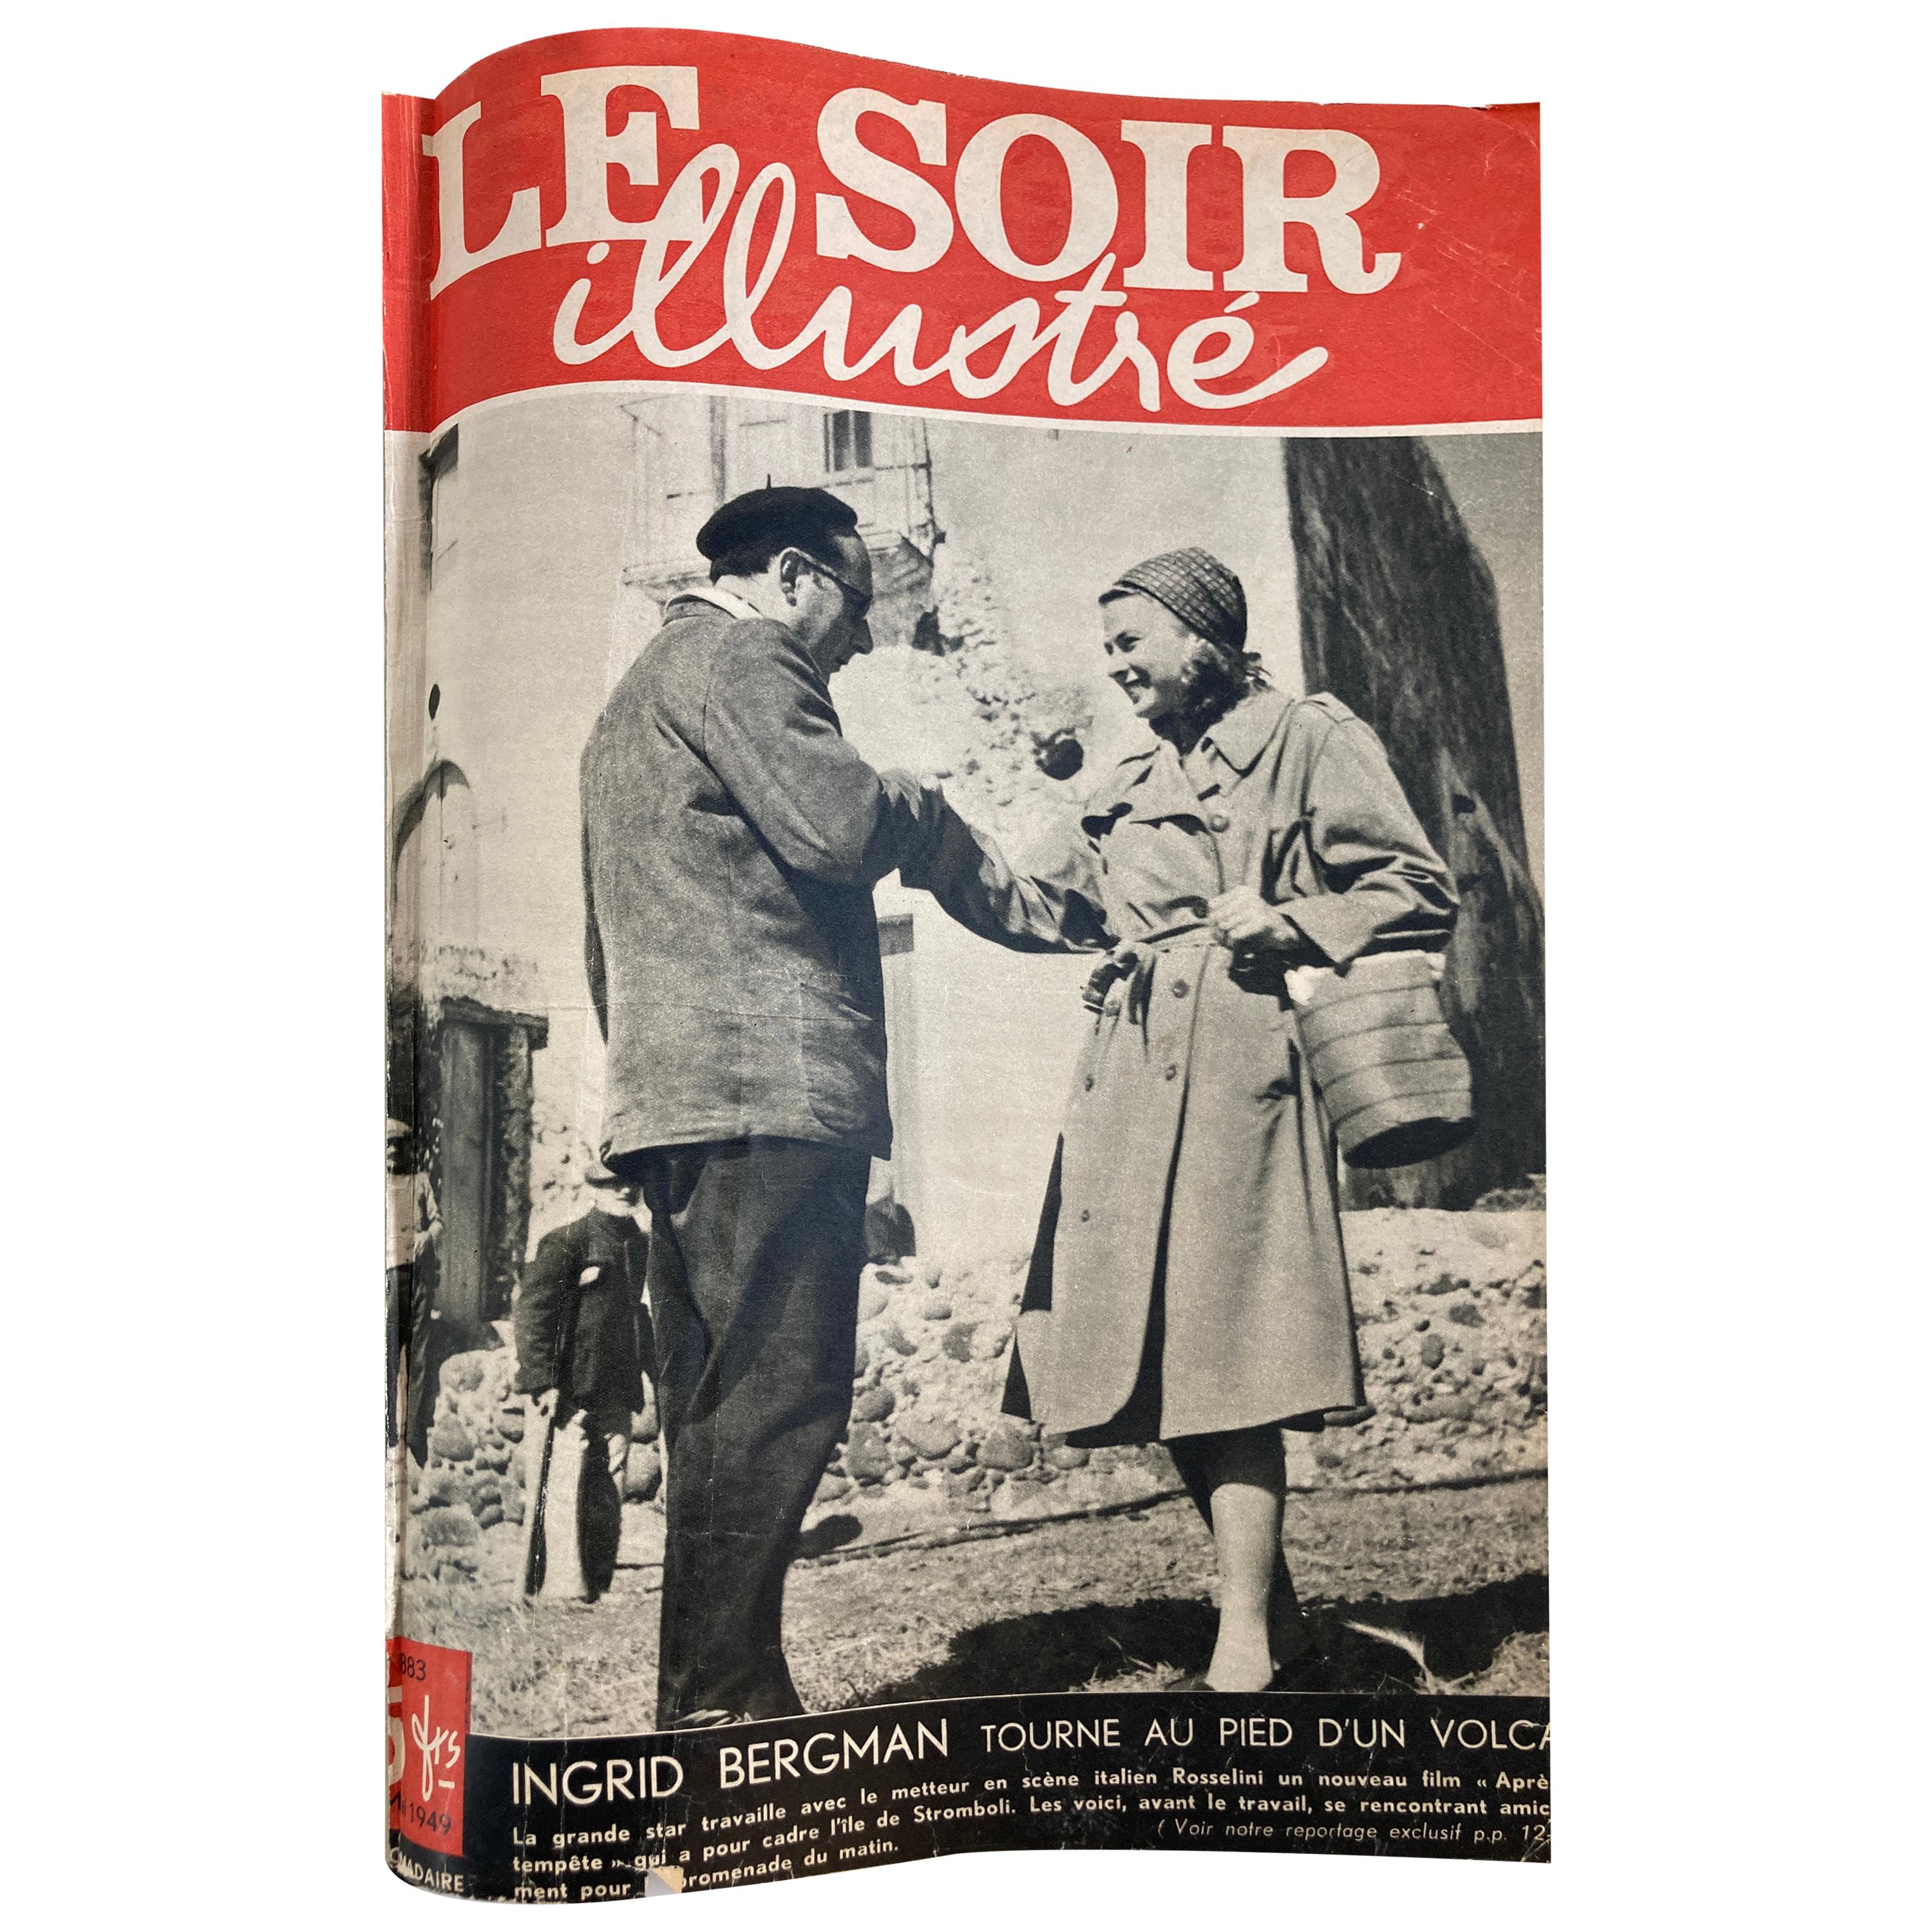 Le Soir Illustre, Mai 1949 to Sept 1949 French Magazines Paris France